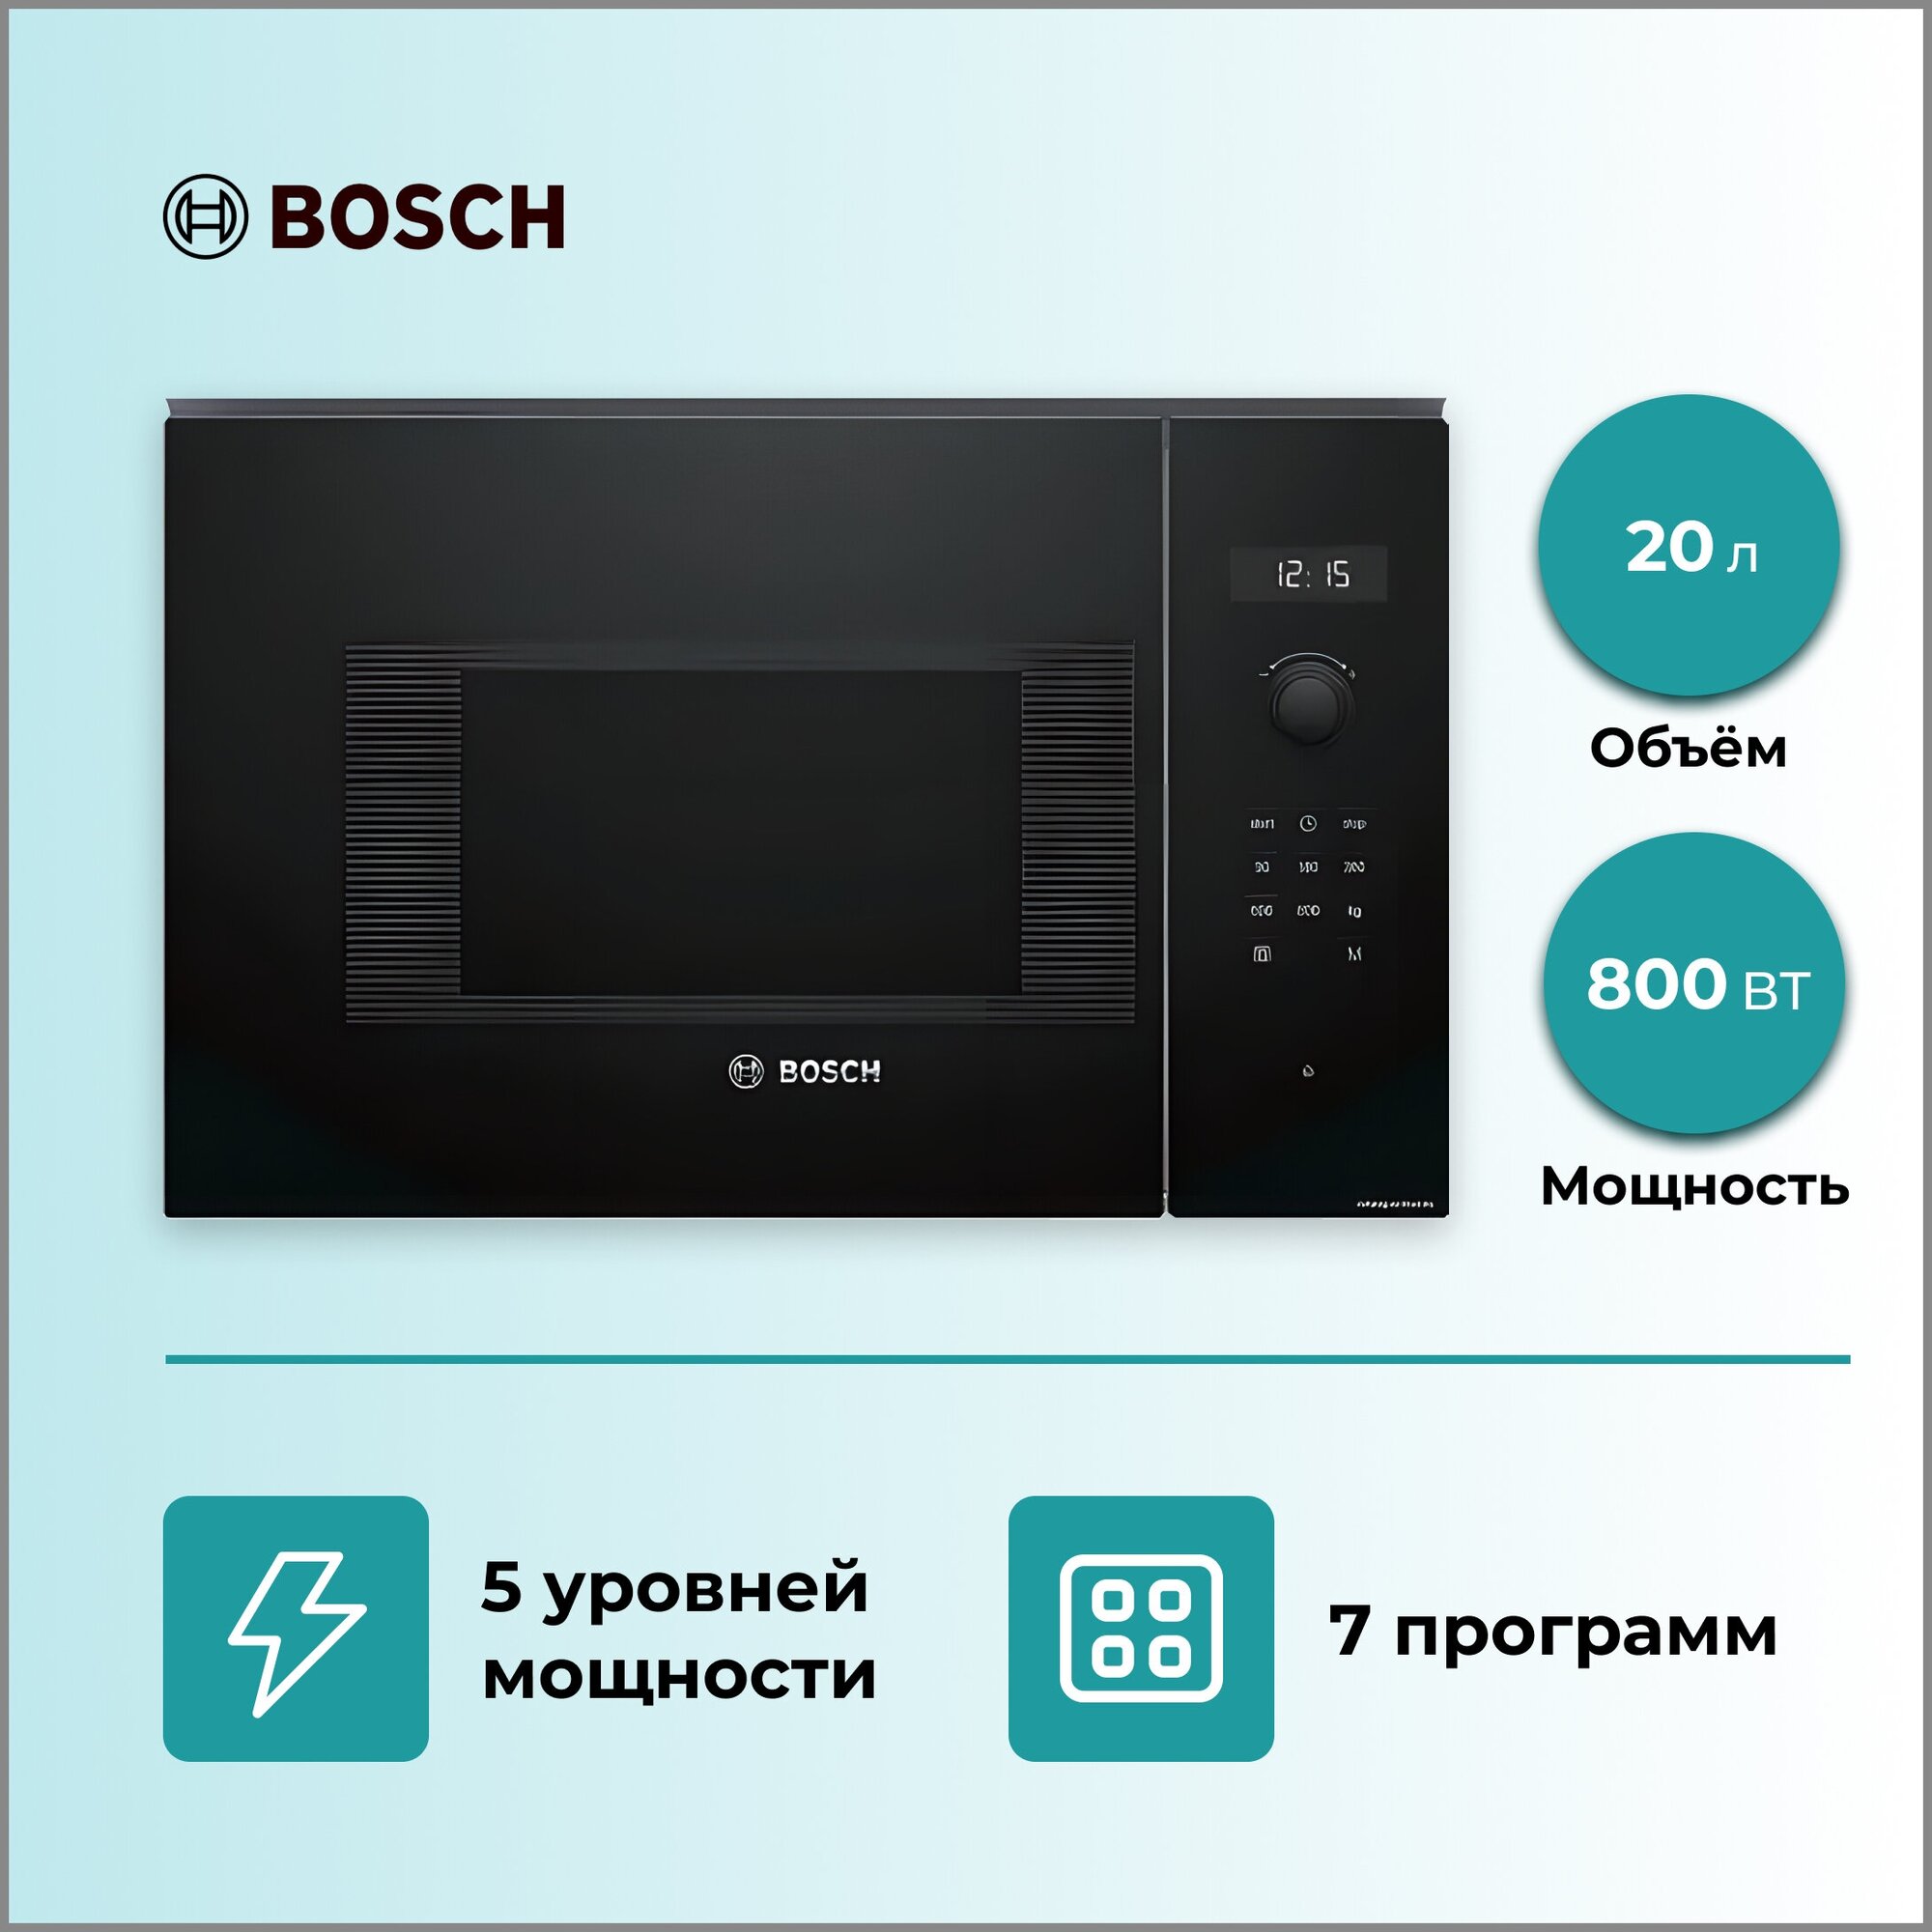 Микроволновая печь встраиваемая Bosch BFL524MB0, черный